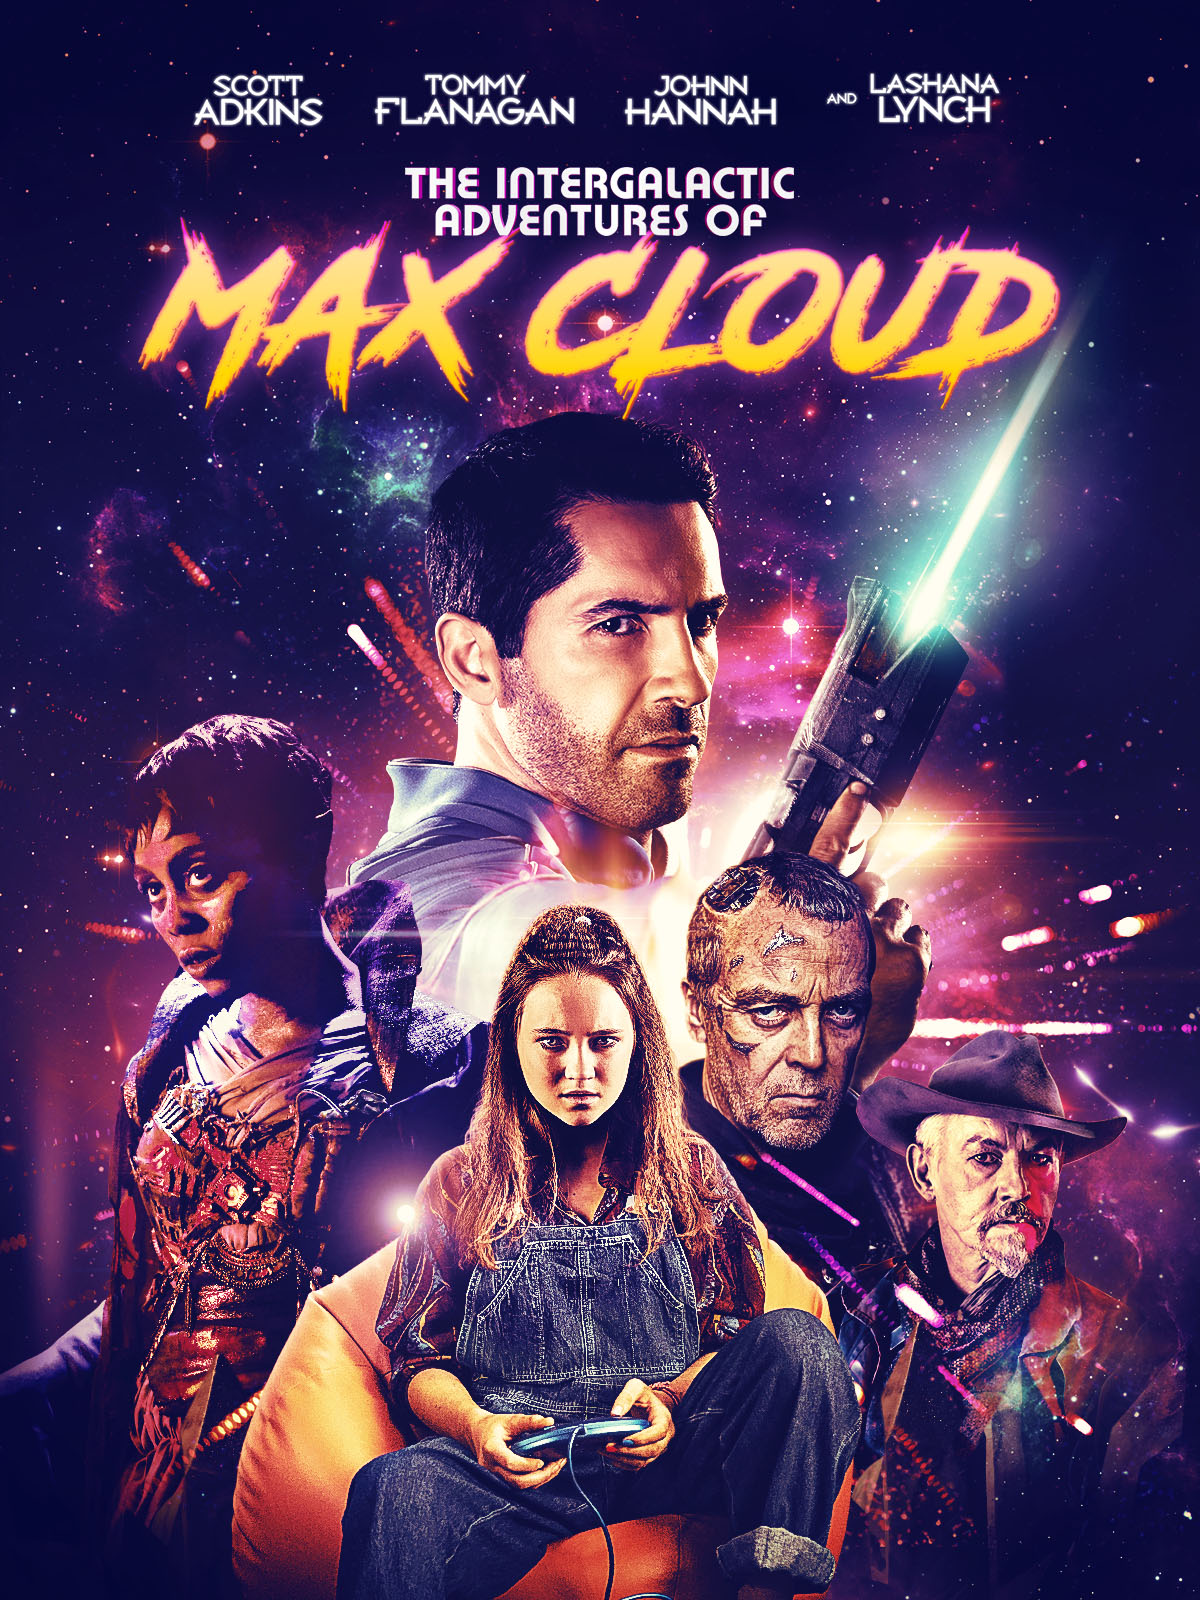 Max Cloud (2020)